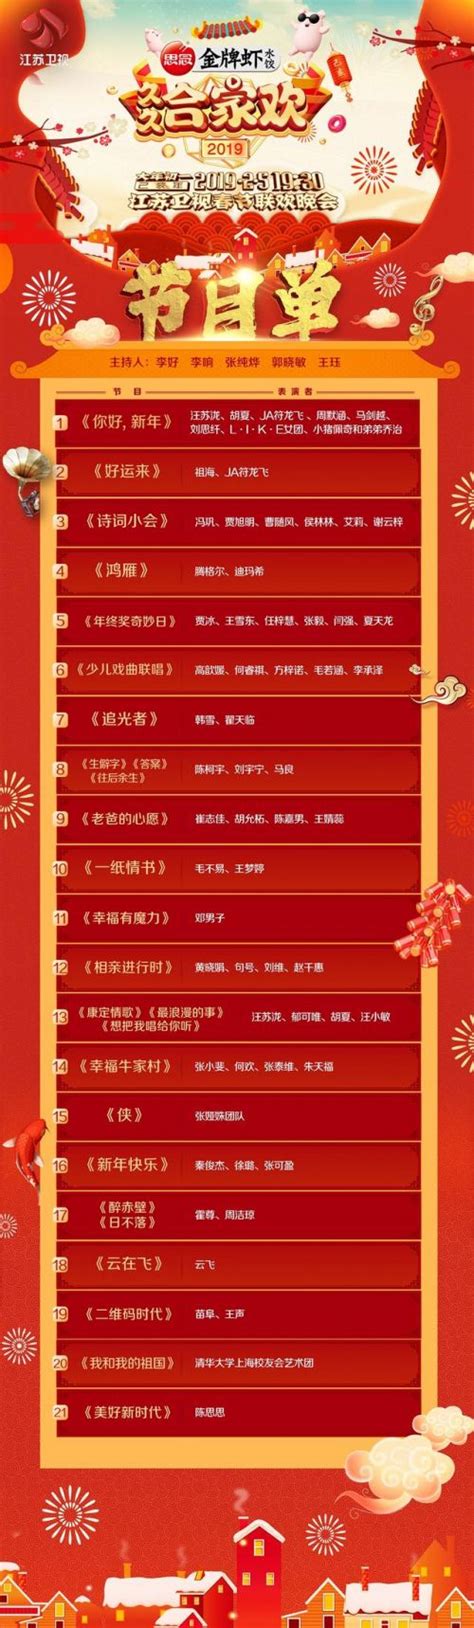 江苏卫视2019春晚节目单图 嘉宾阵容名单与直播时间-闽南网